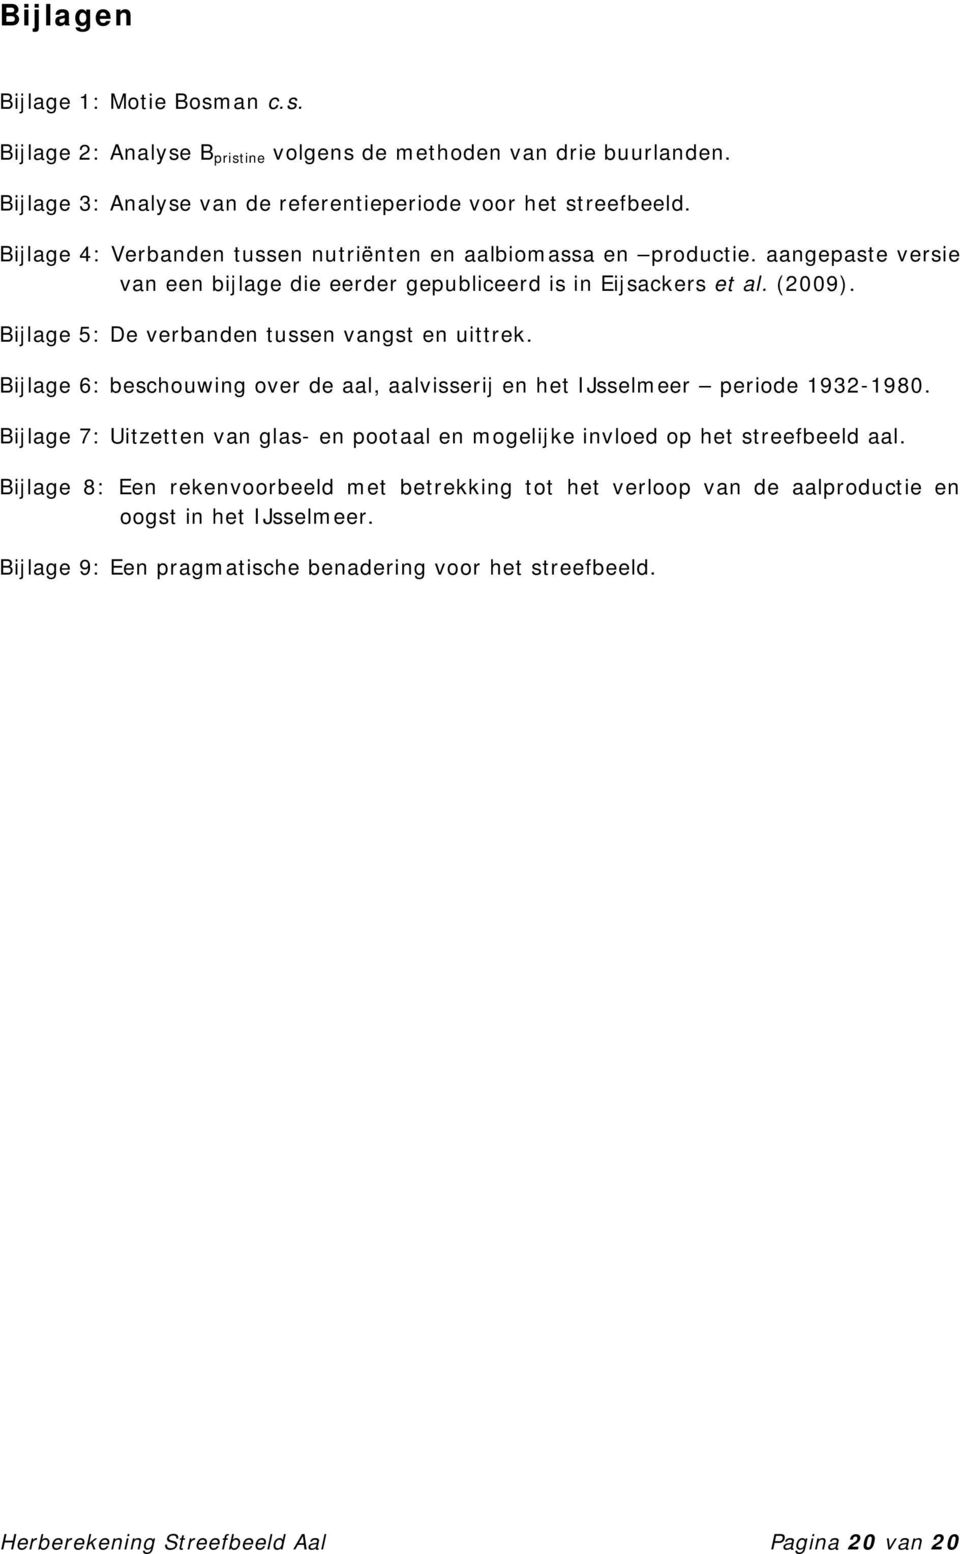 Bijlage 5: De verbanden tussen vangst en uittrek. Bijlage 6: beschouwing over de aal, aalvisserij en het IJsselmeer periode 1932-1980.